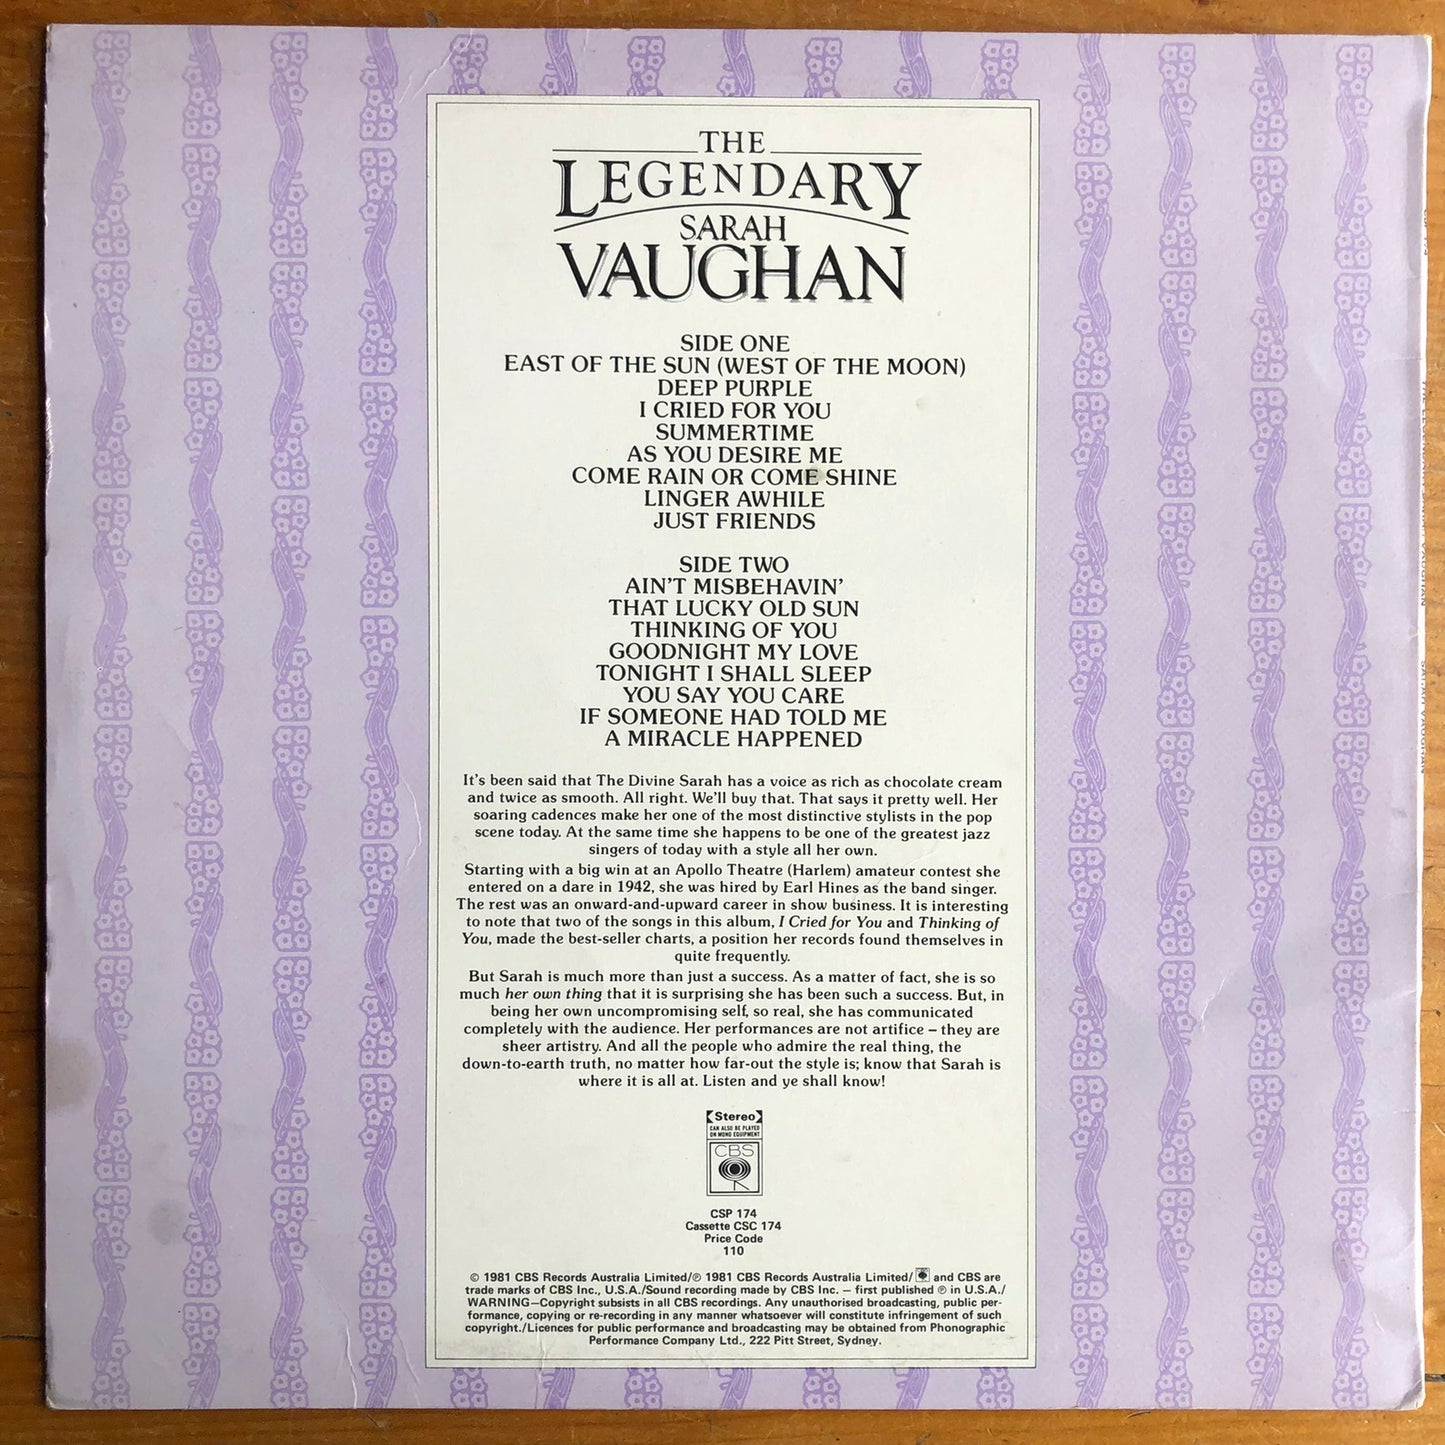 Sarah Vaughan - The Legendary